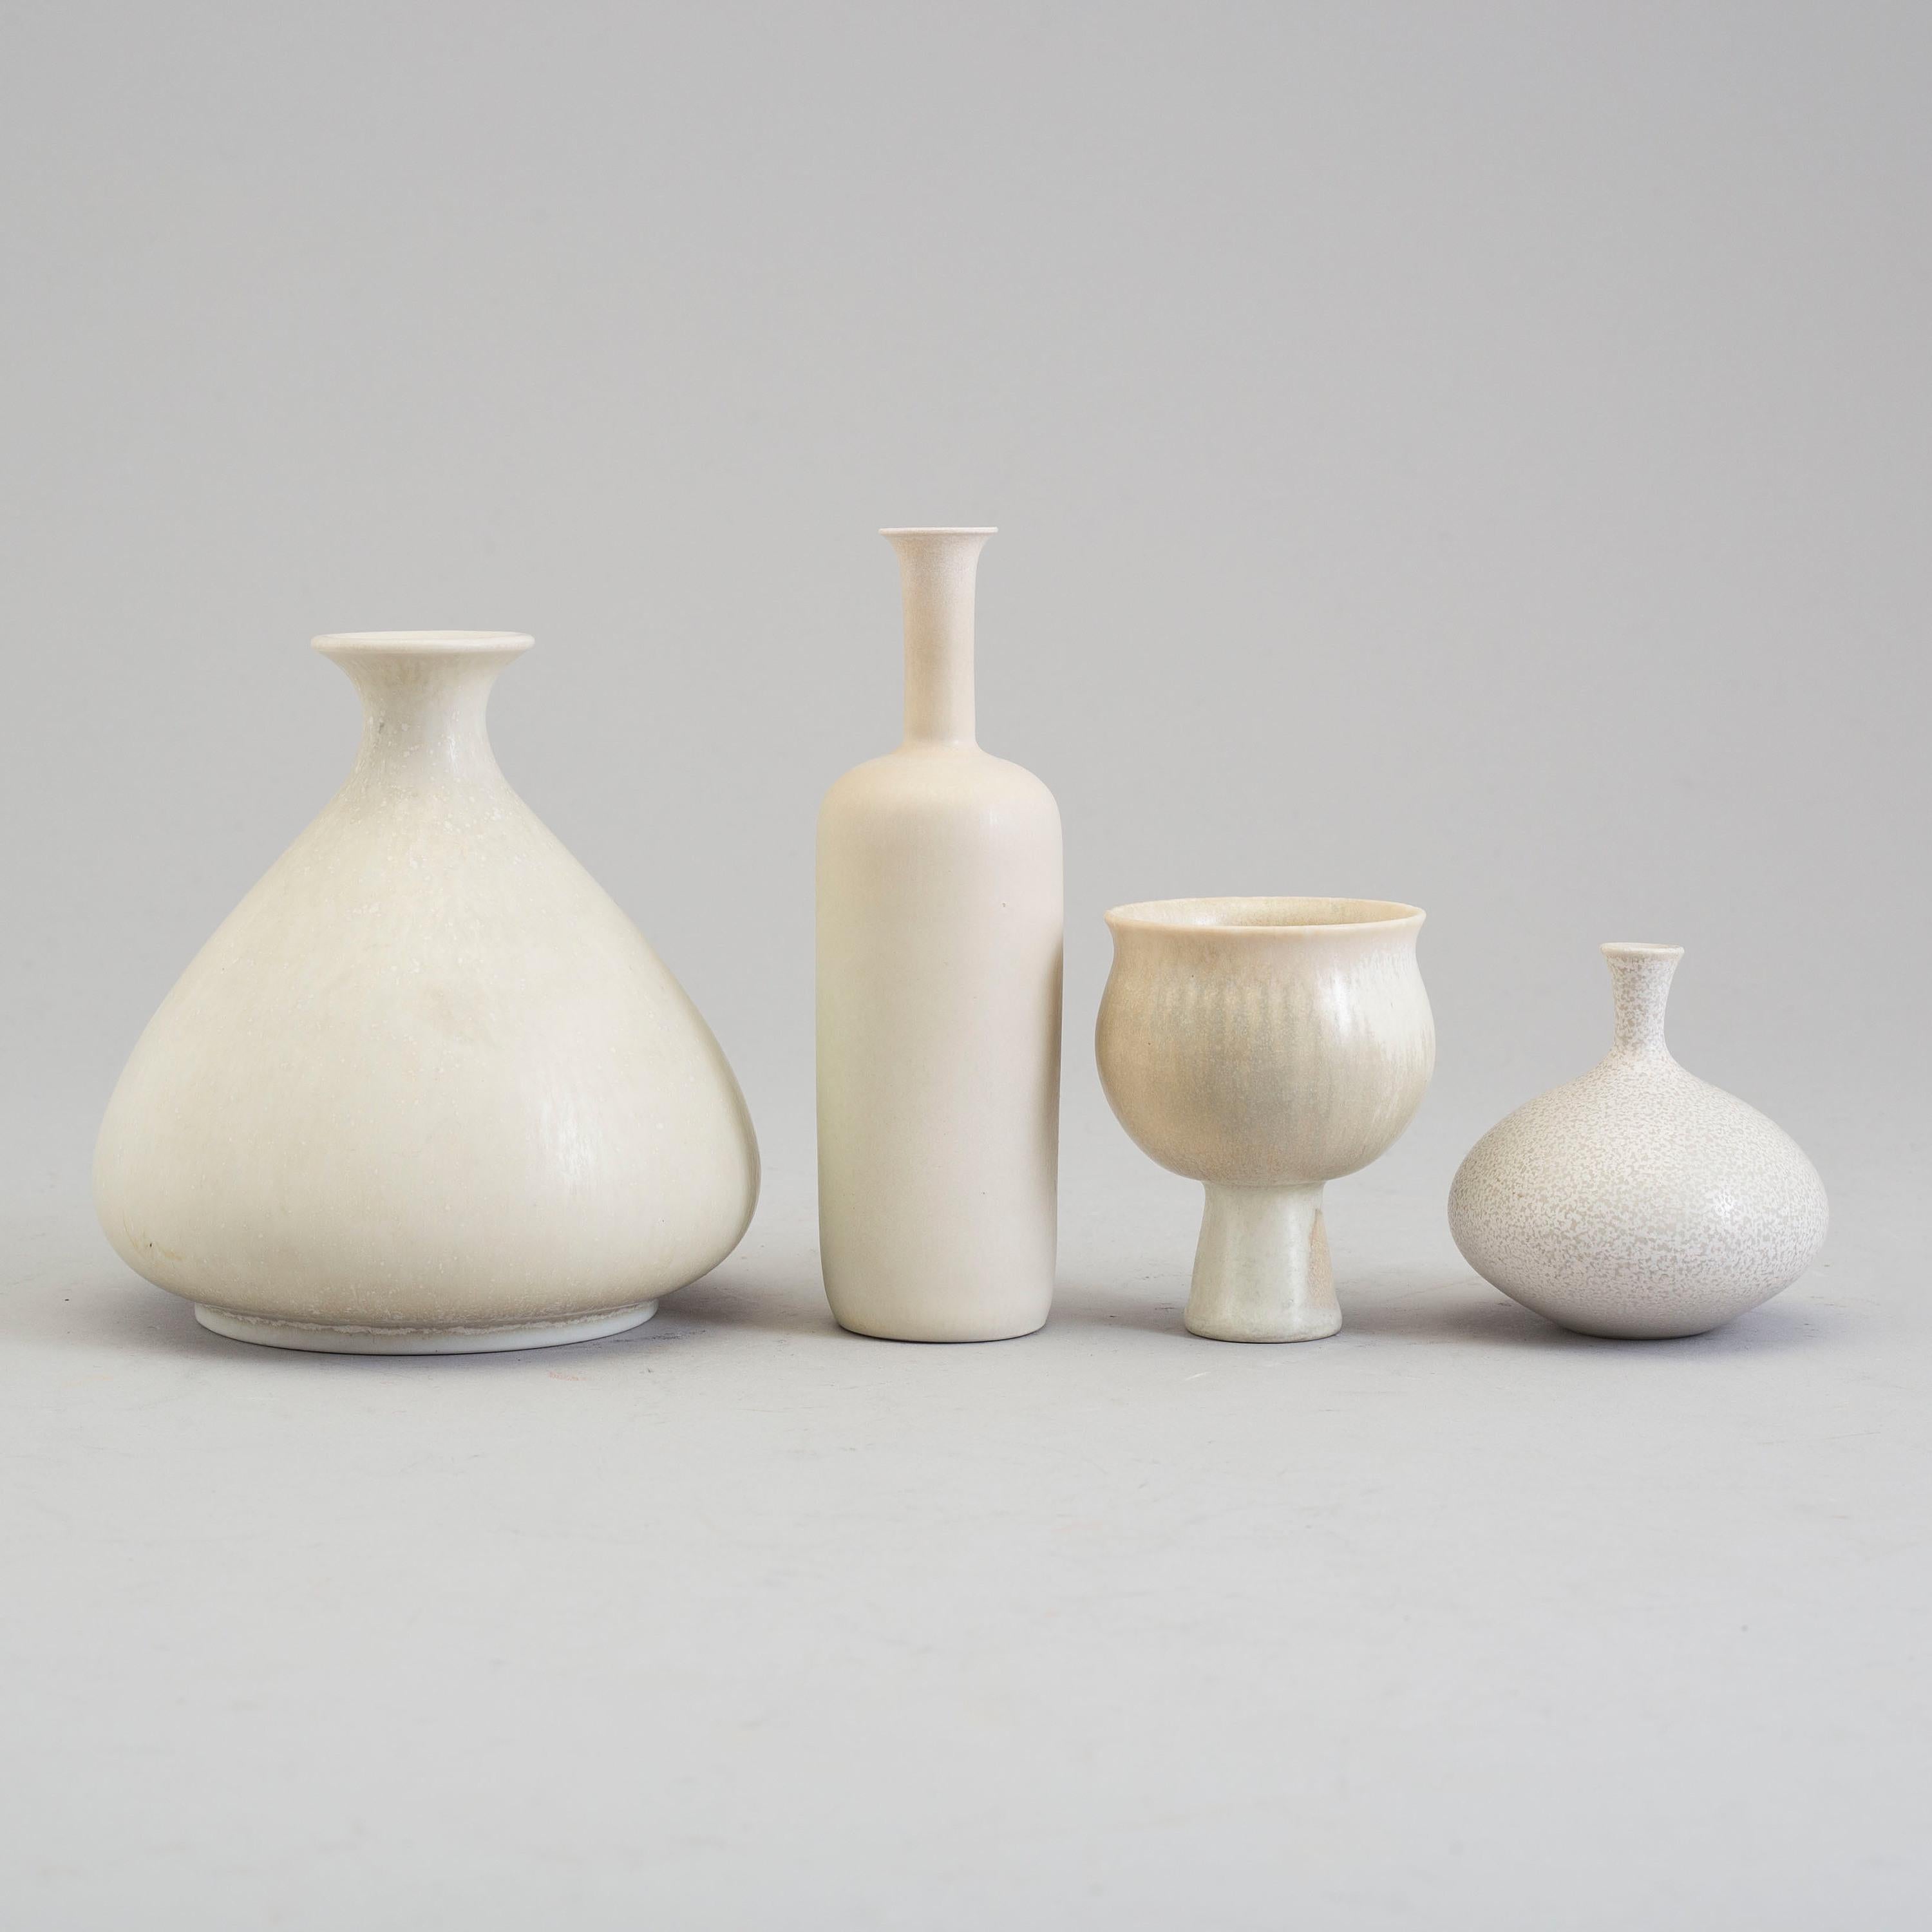 Gunnar Nylund (Schweden, 1904-1997)
Vier kleine Vasen aus Steingut von Rörstrand, weiß emailliert 
Rückseitig signiert mit 